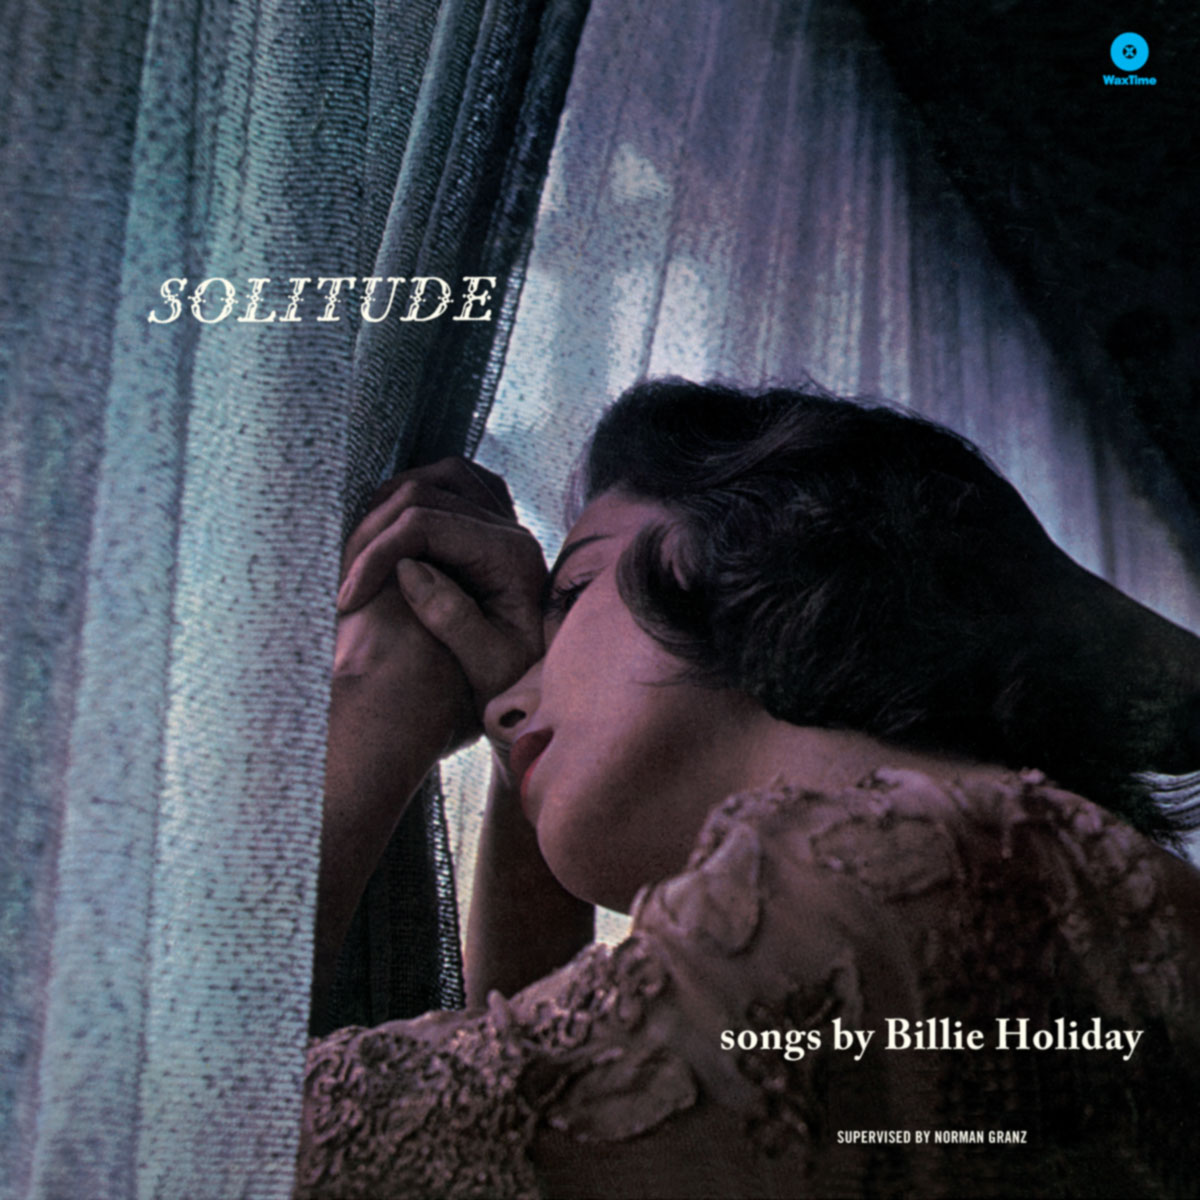 Solitude + 1 Bonus Track